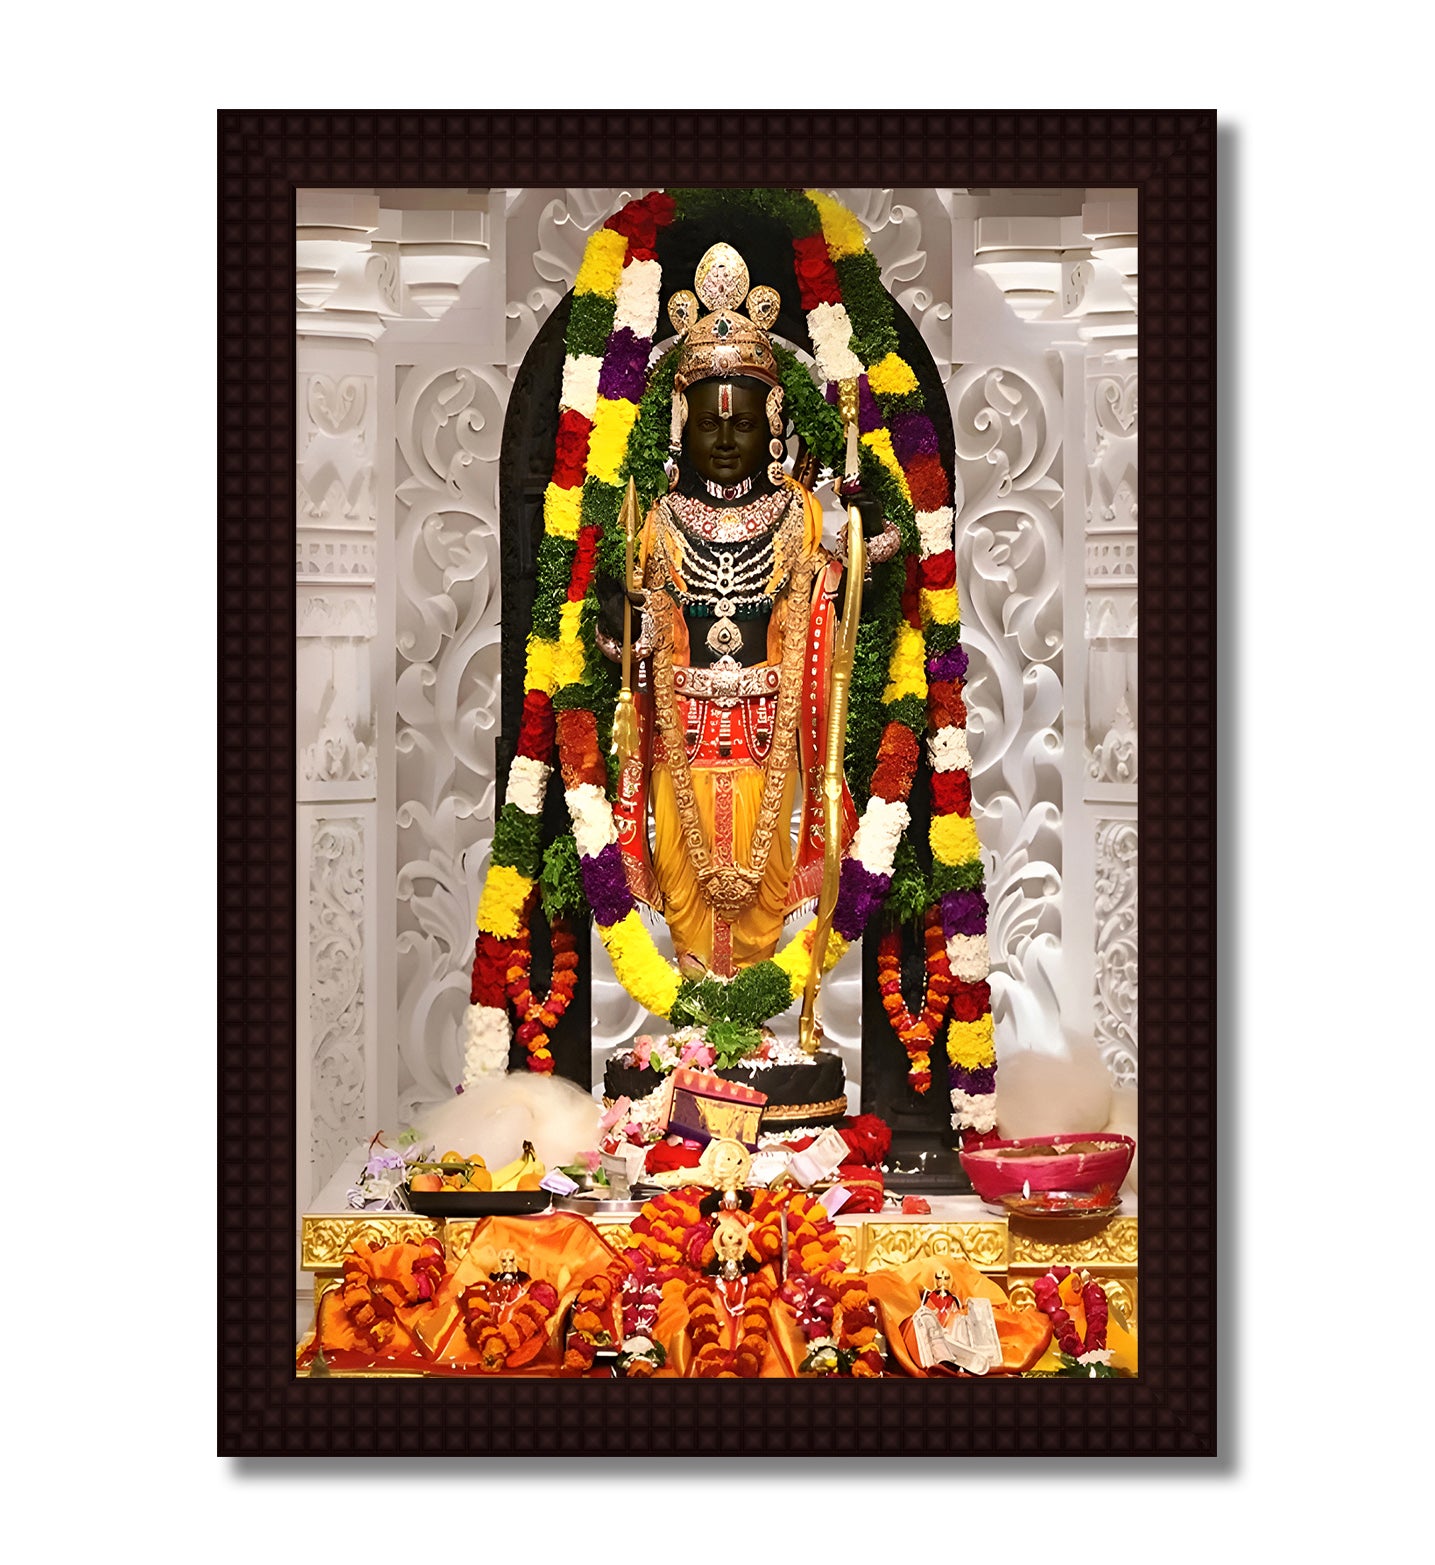 Shri Ram Lalla - Ayodhya